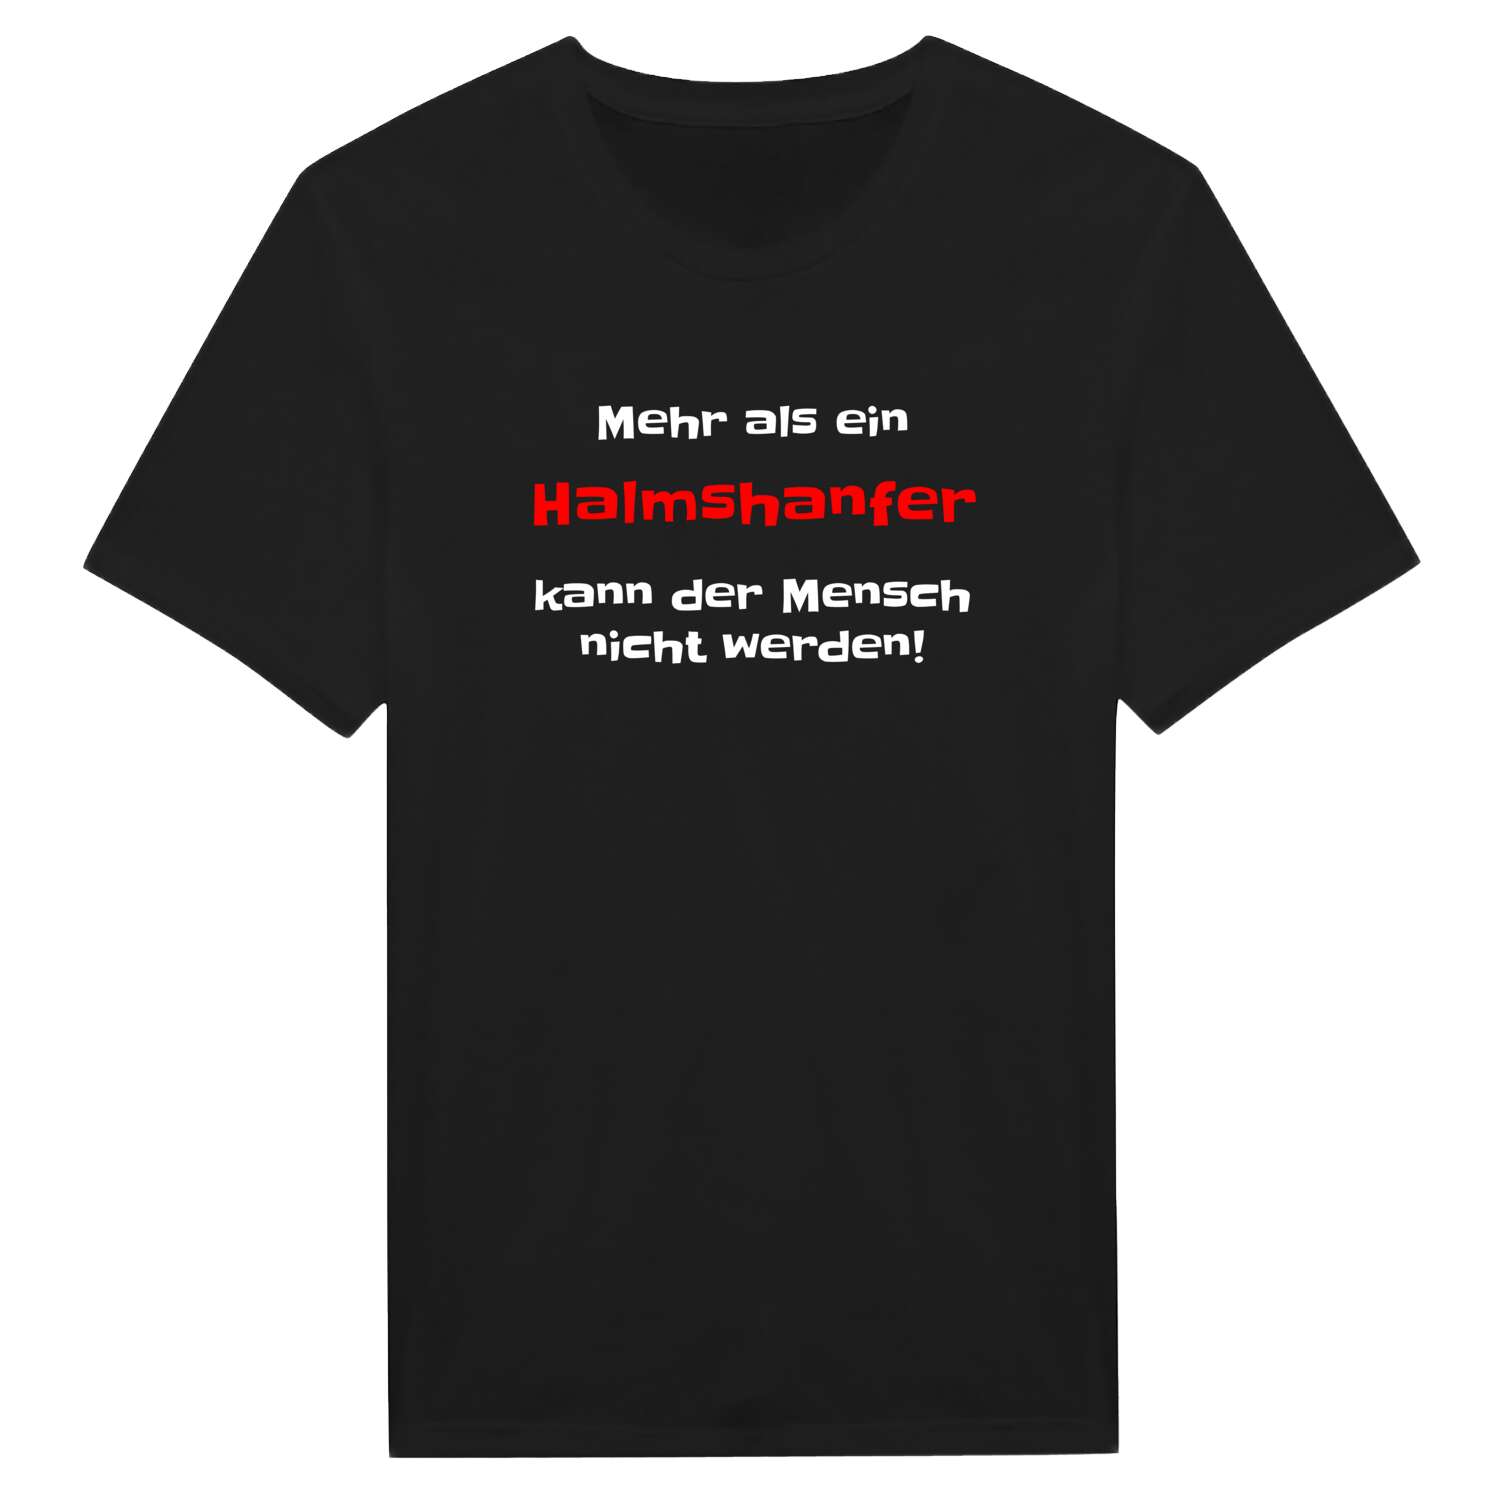 Halmshanf T-Shirt »Mehr als ein«